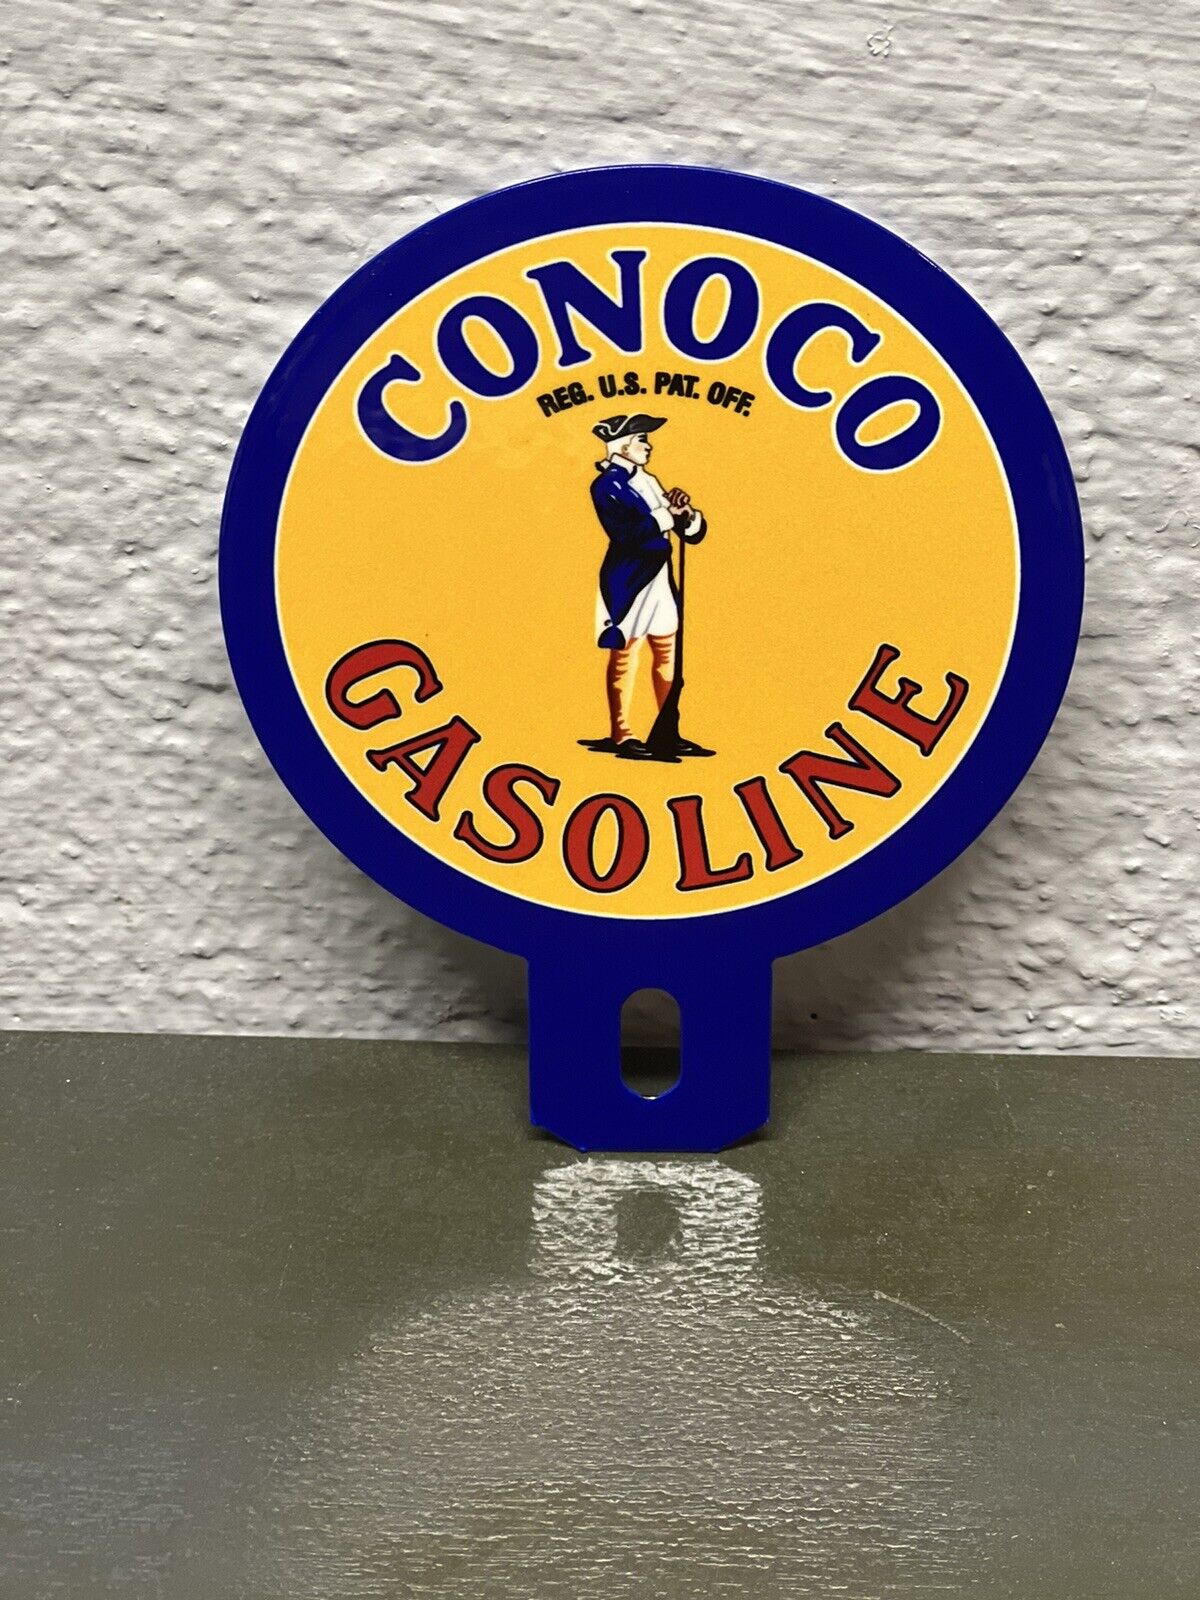 CONOCO Gasoline Metal Plate Topper Sign Gas Garage Sales Service Automotive